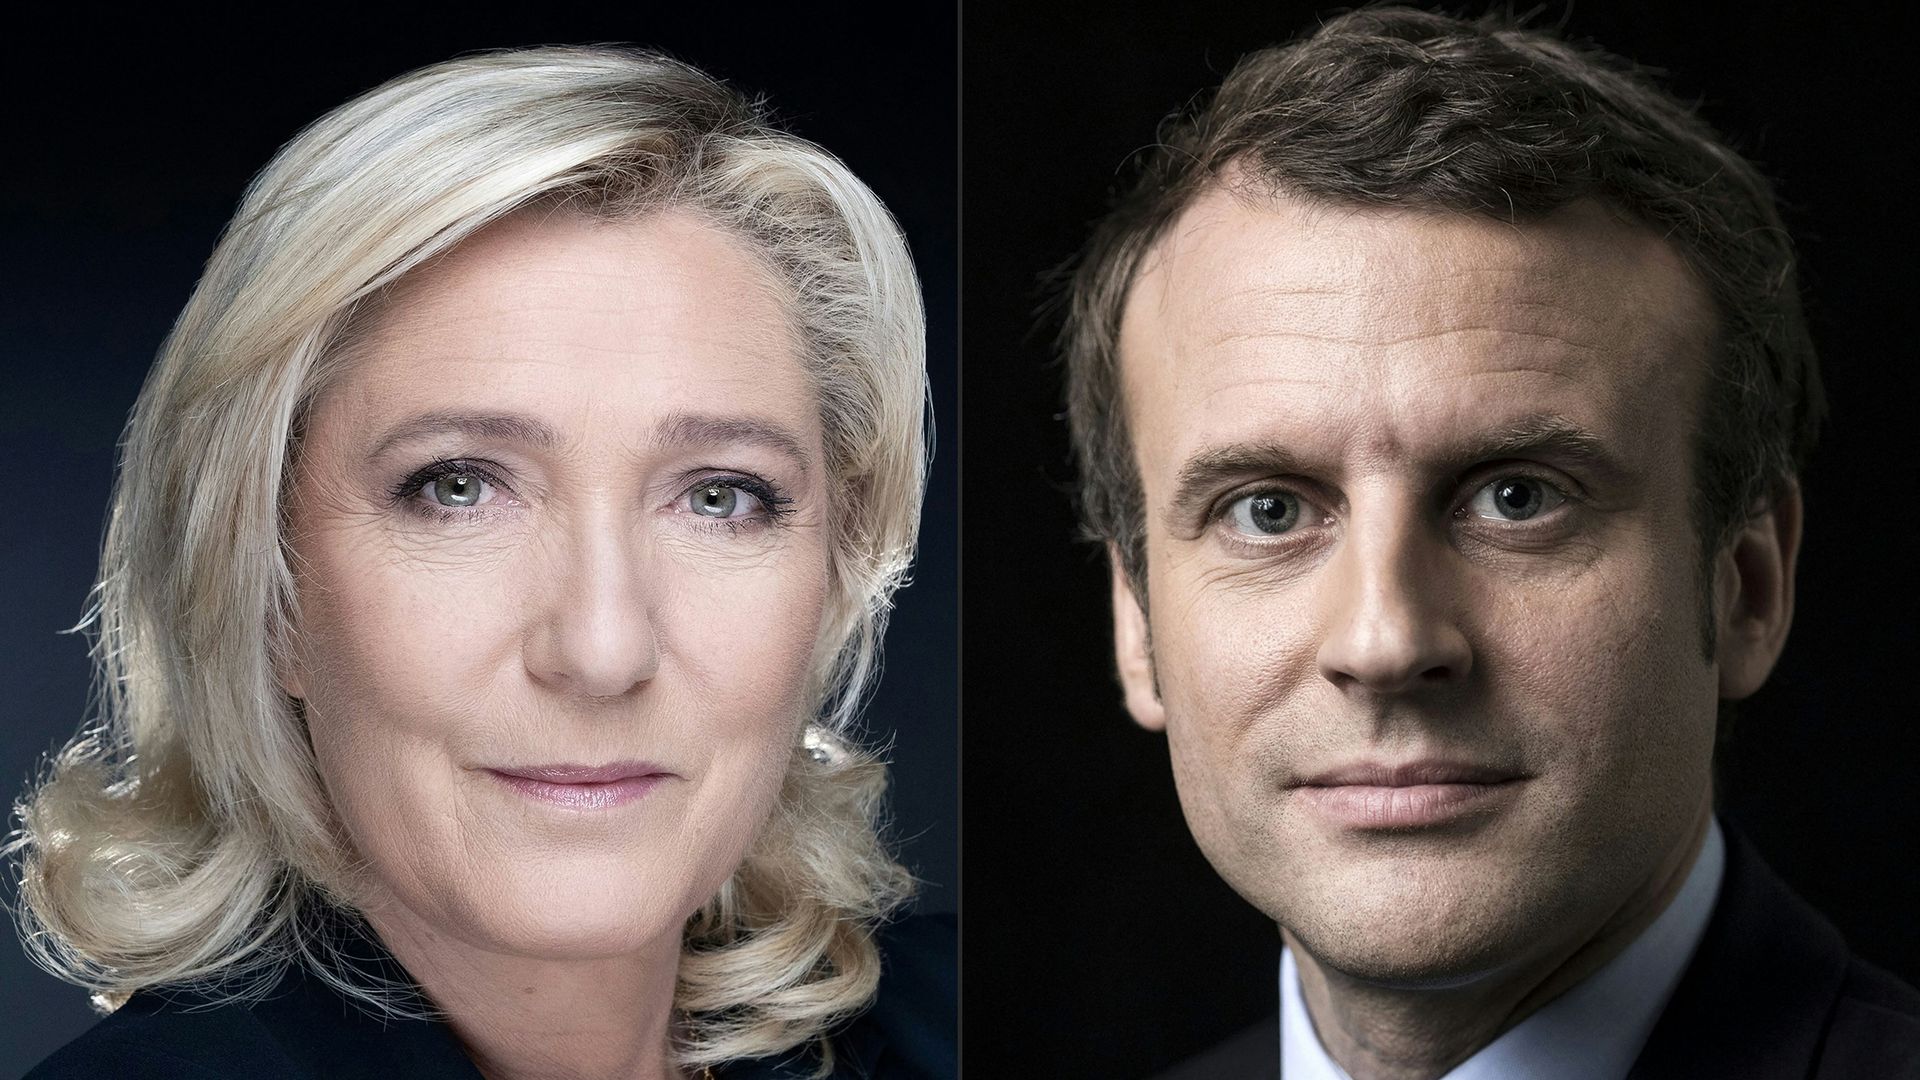 Le Pen and Macron headshots